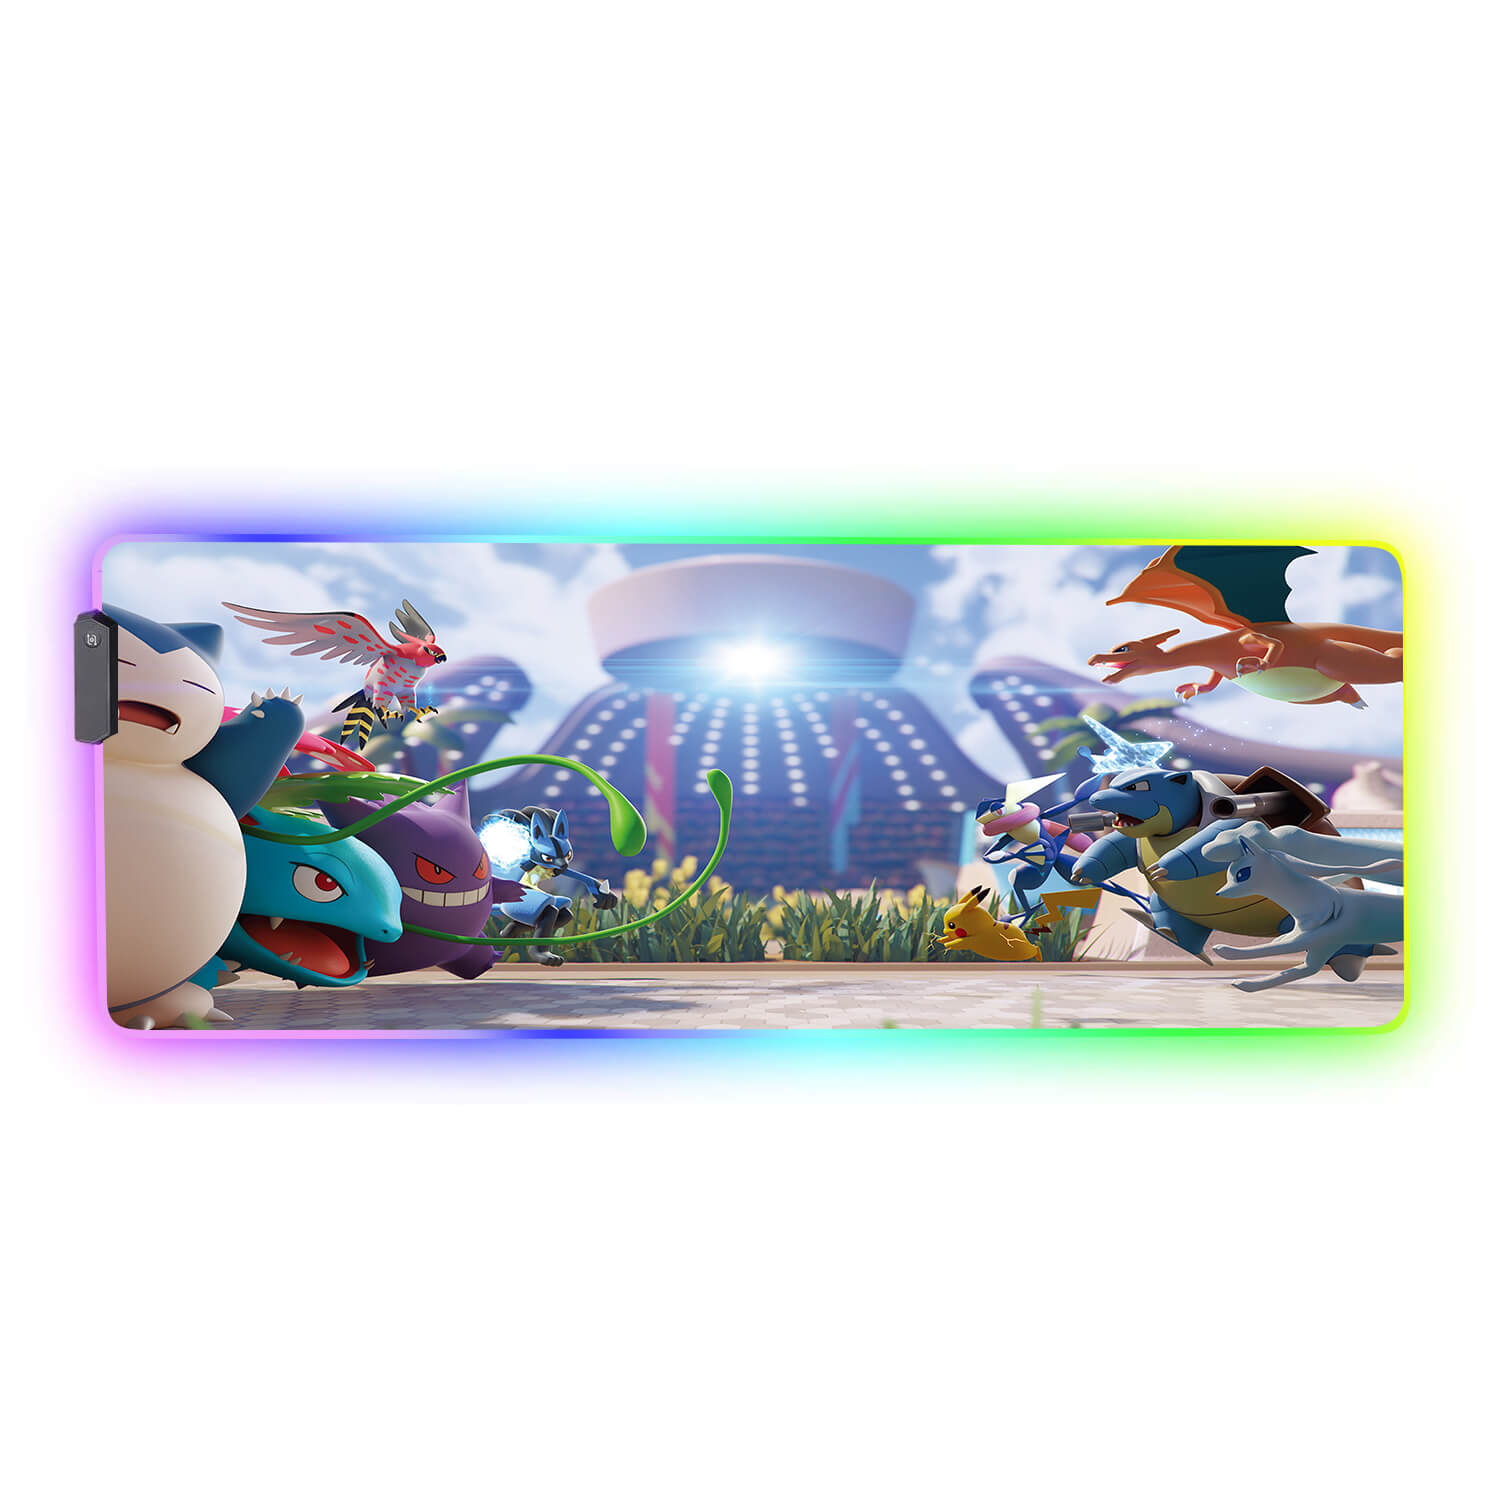 Pokemon RGB Gaming Mouse Pad(2 patterns)